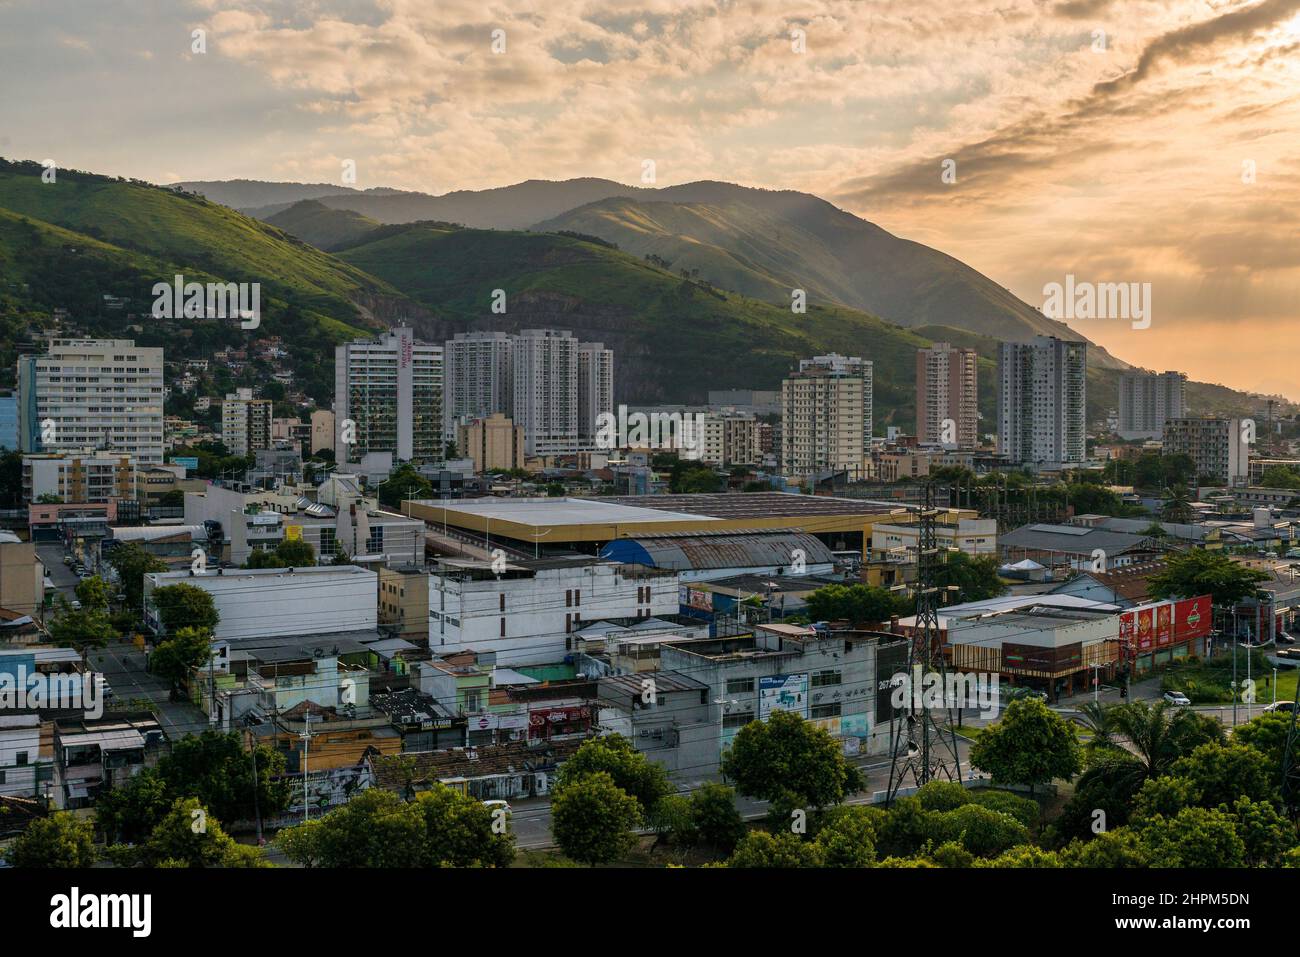 Aerial View of Nova Iguacu City, Metropolitan Area of Rio de Janeiro, Brazil Stock Photo